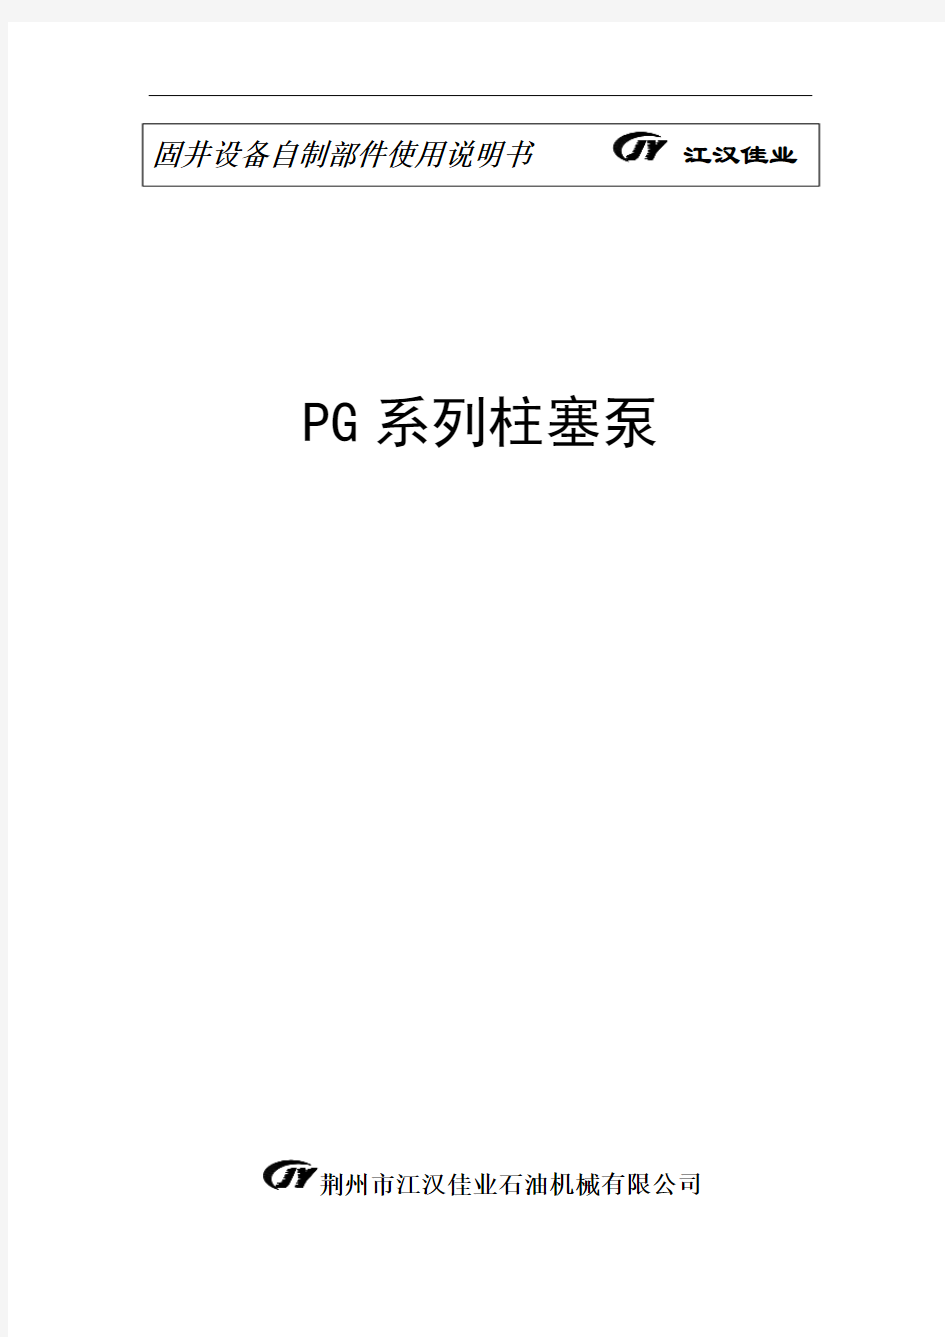 动力端(中文)PG三缸柱塞泵使用说明书(CPT300泵)(1)讲述